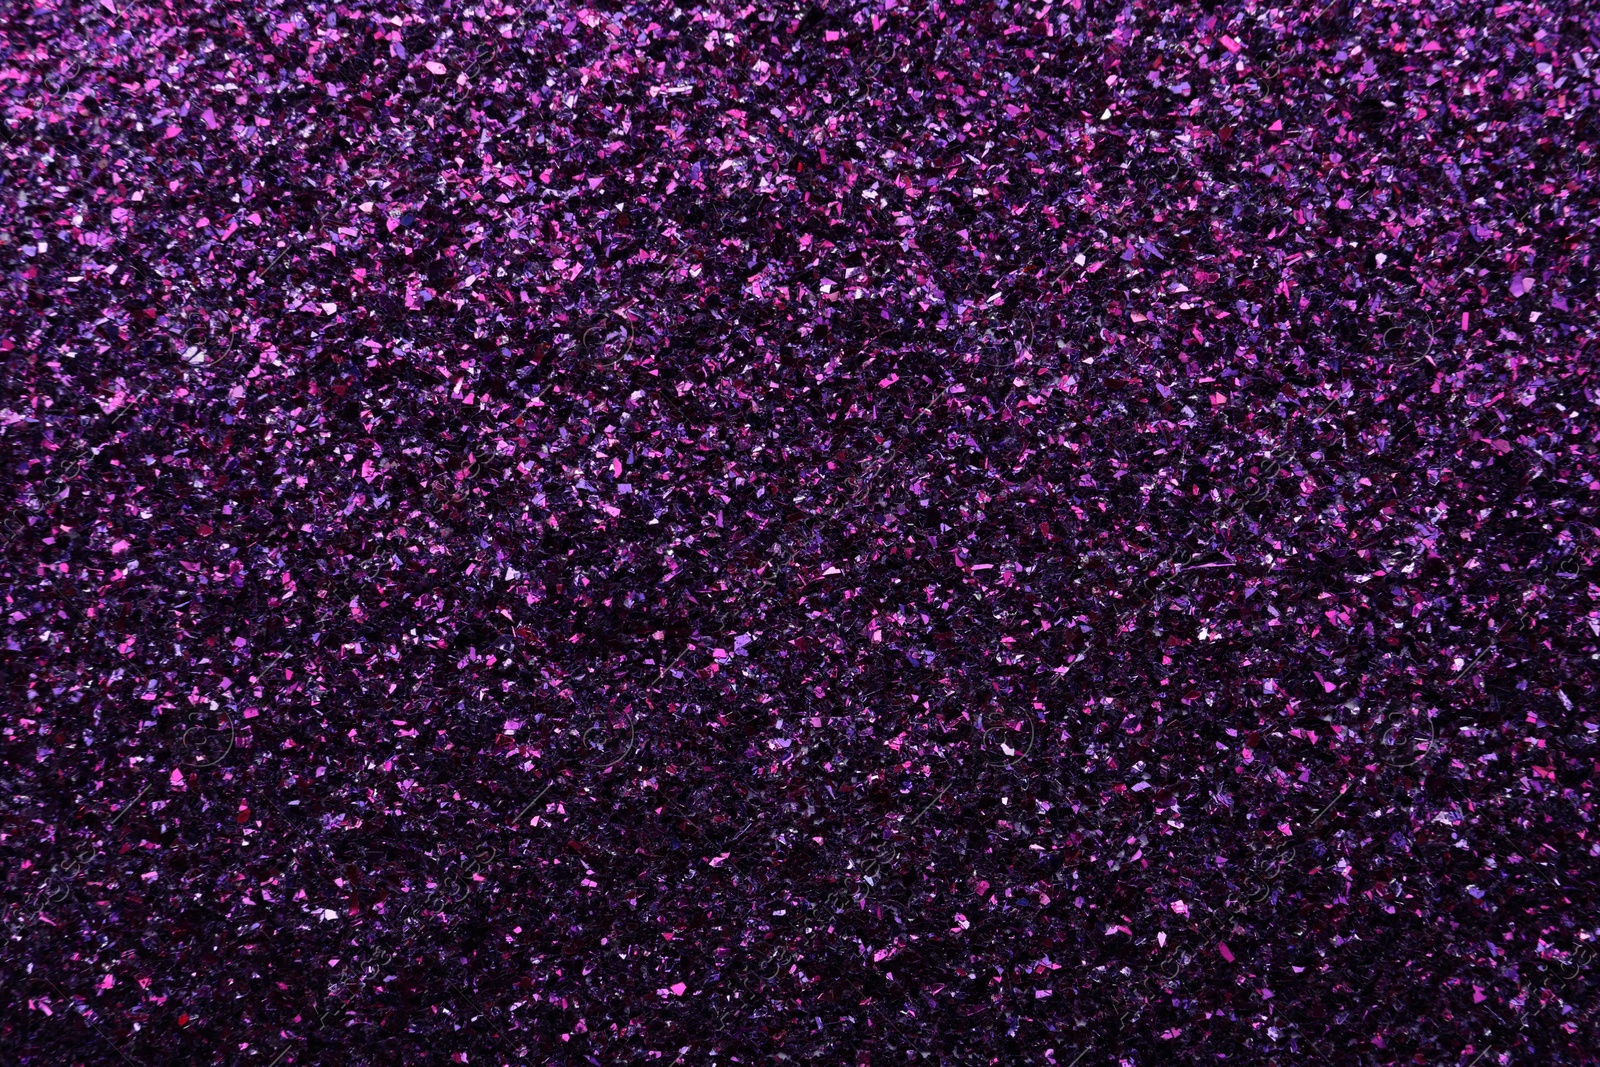 Photo of Beautiful shiny purple glitter as background, closeup